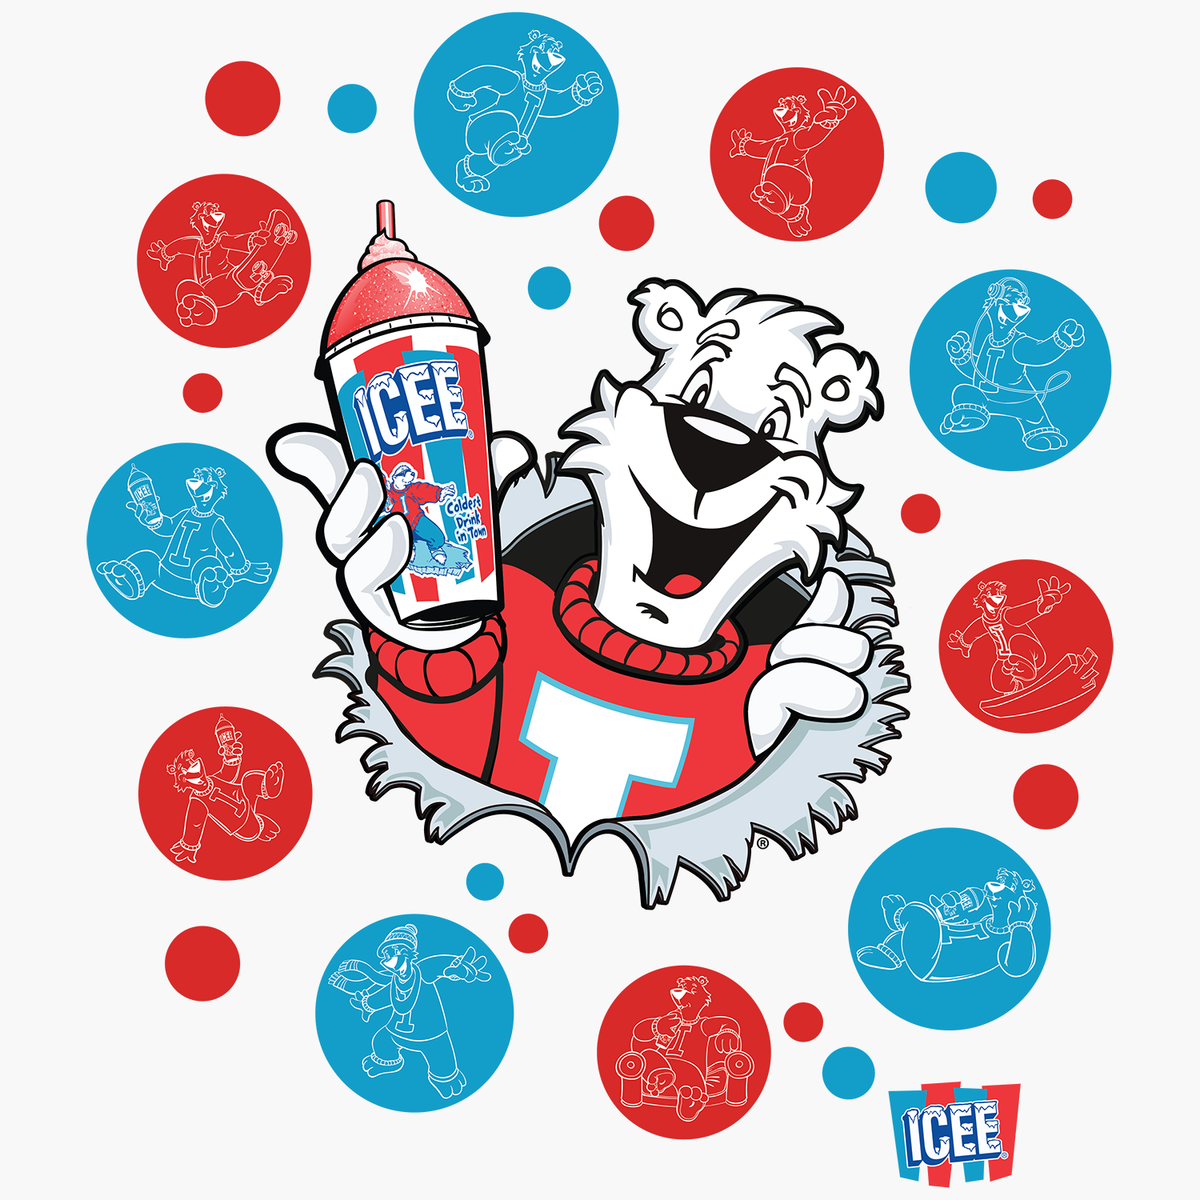 Icee Polar Bear Logo Tee Culturefly 6050